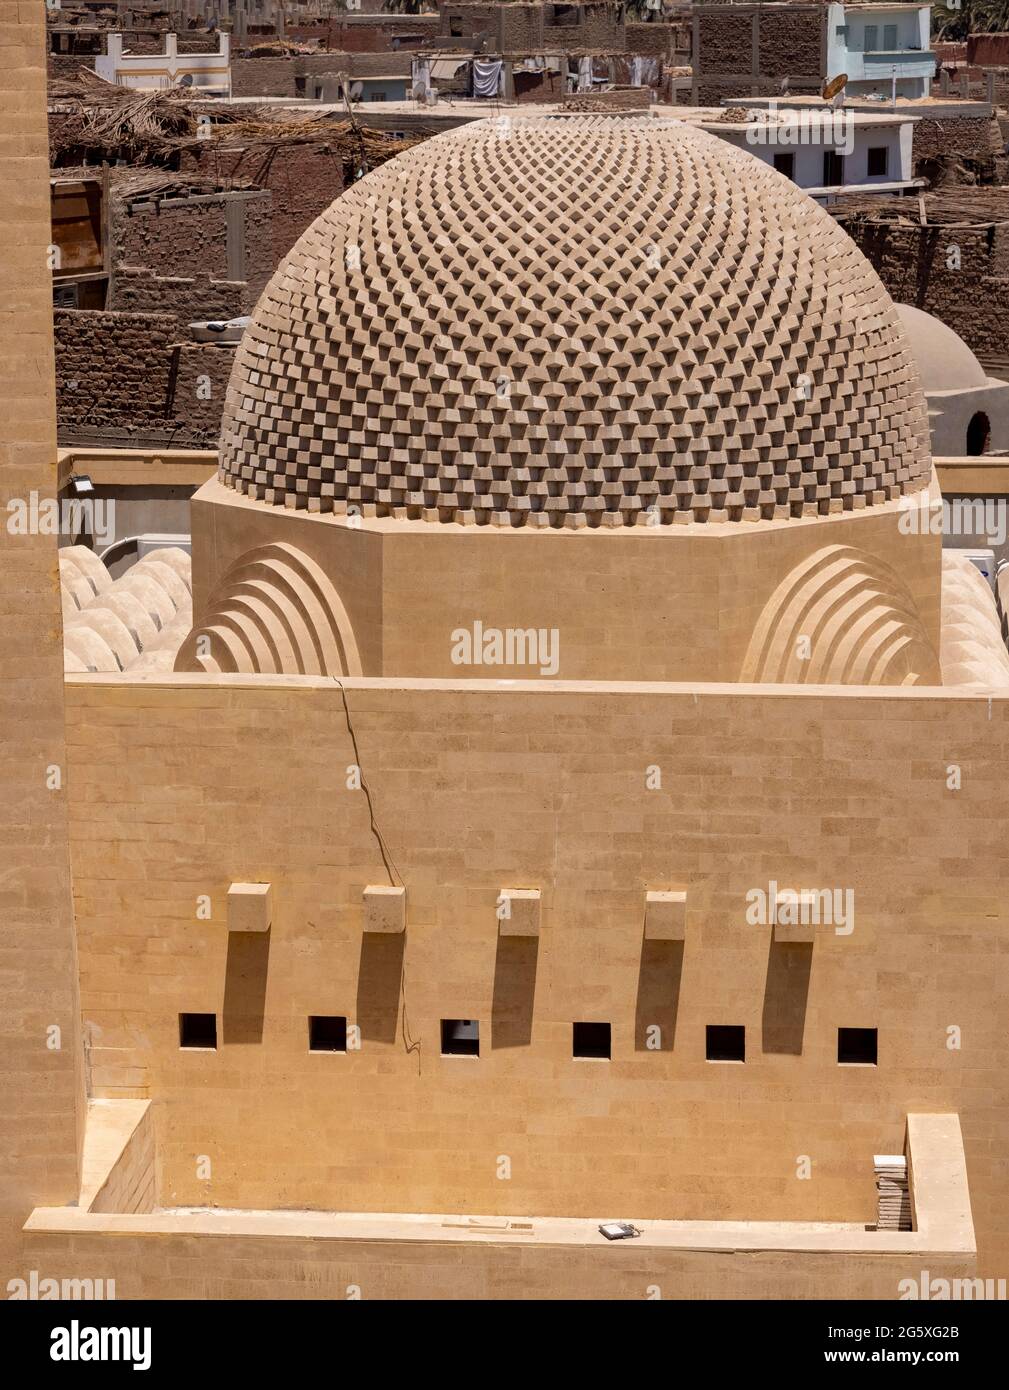 Dôme en brique, mosquée Abu al Stait, Basuna, Sohag, Égypte Banque D'Images